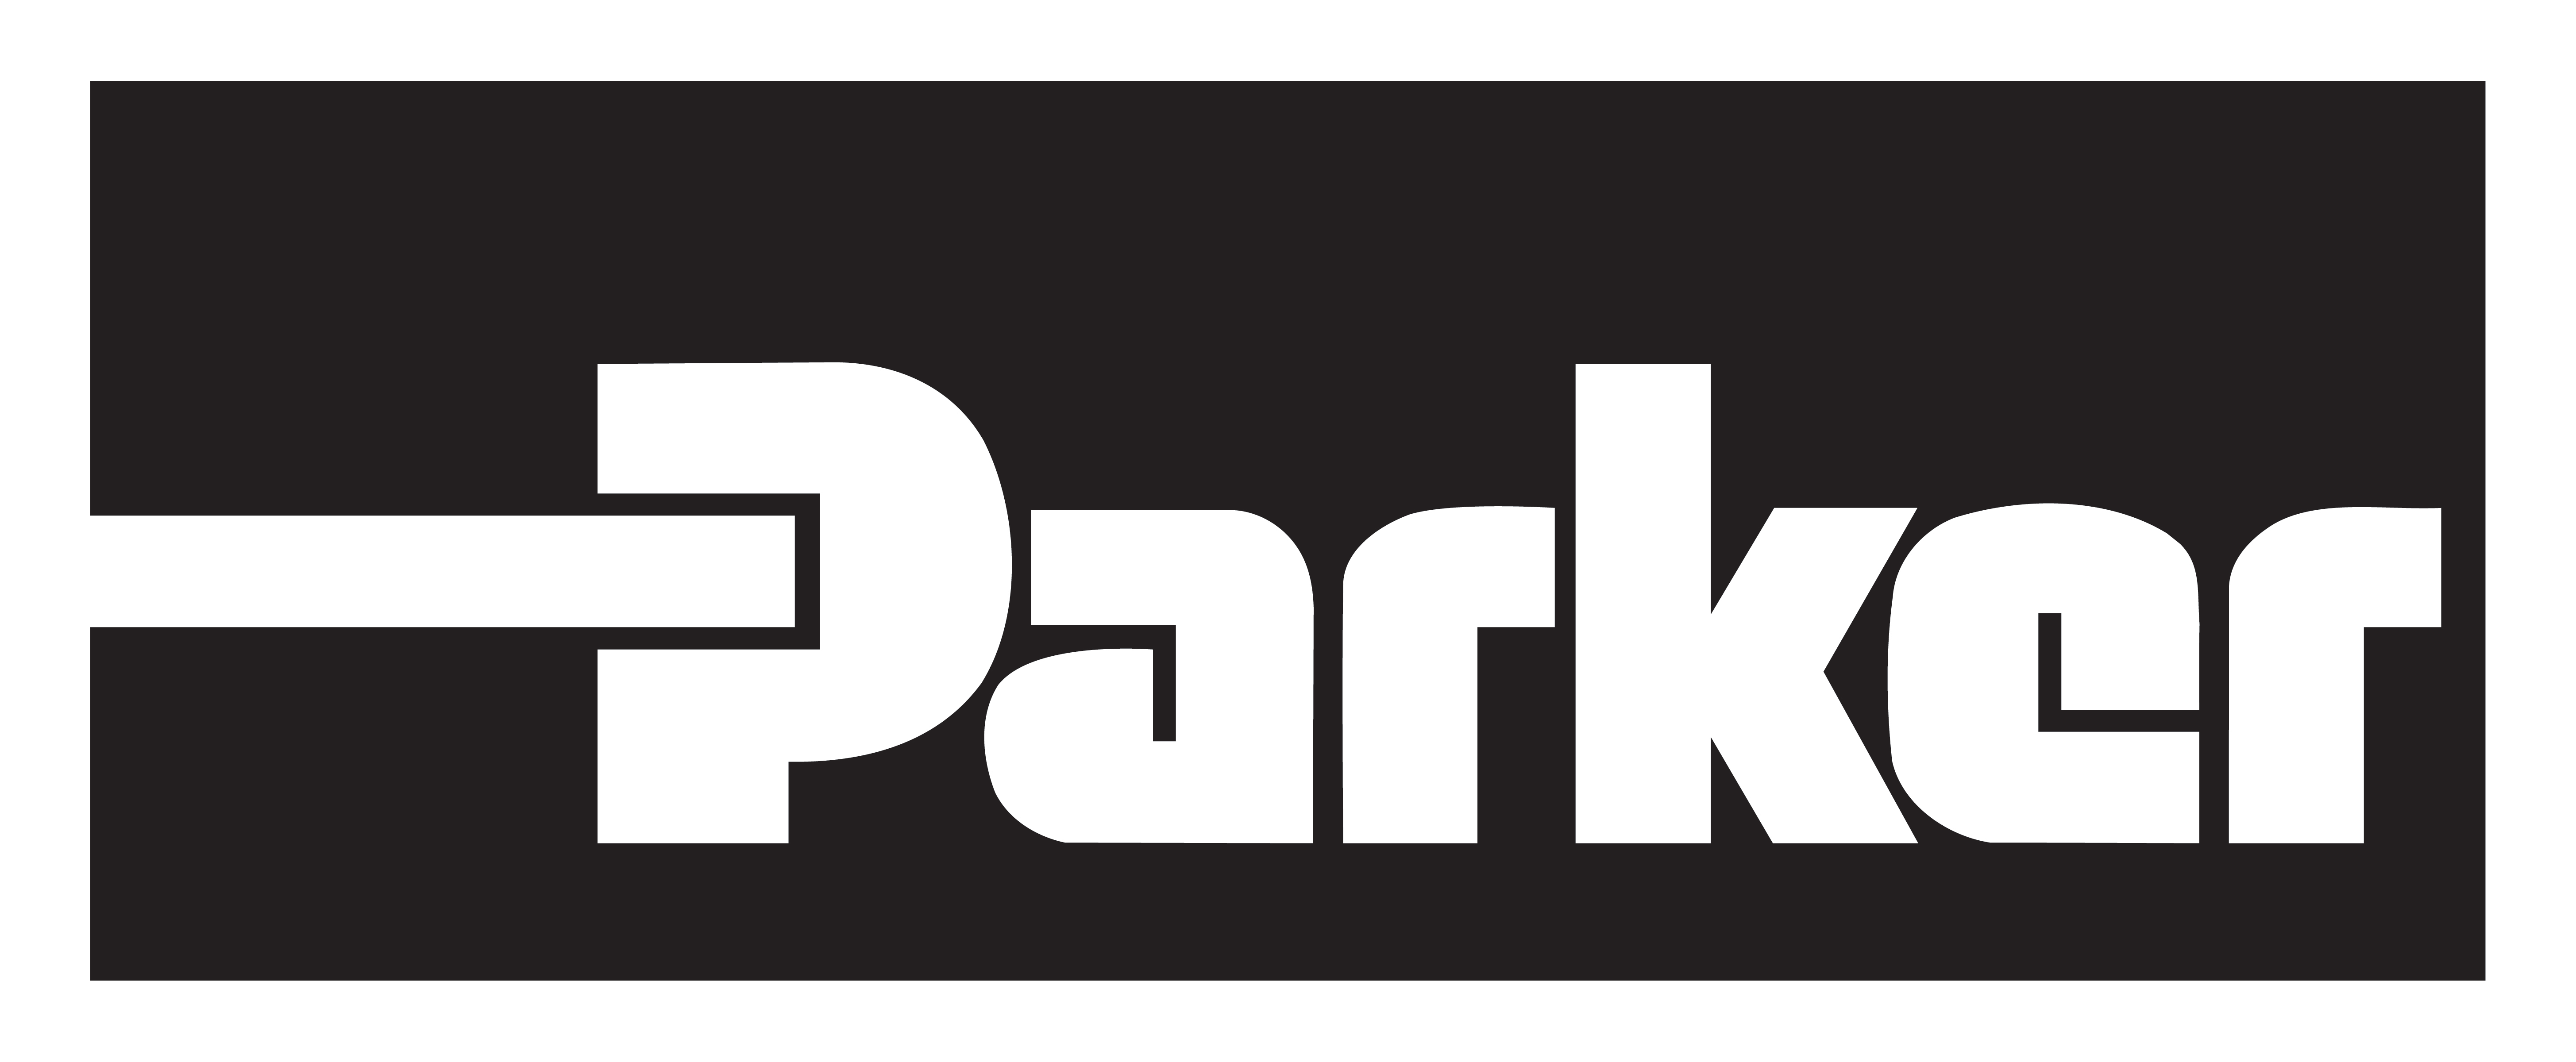 parker-logo